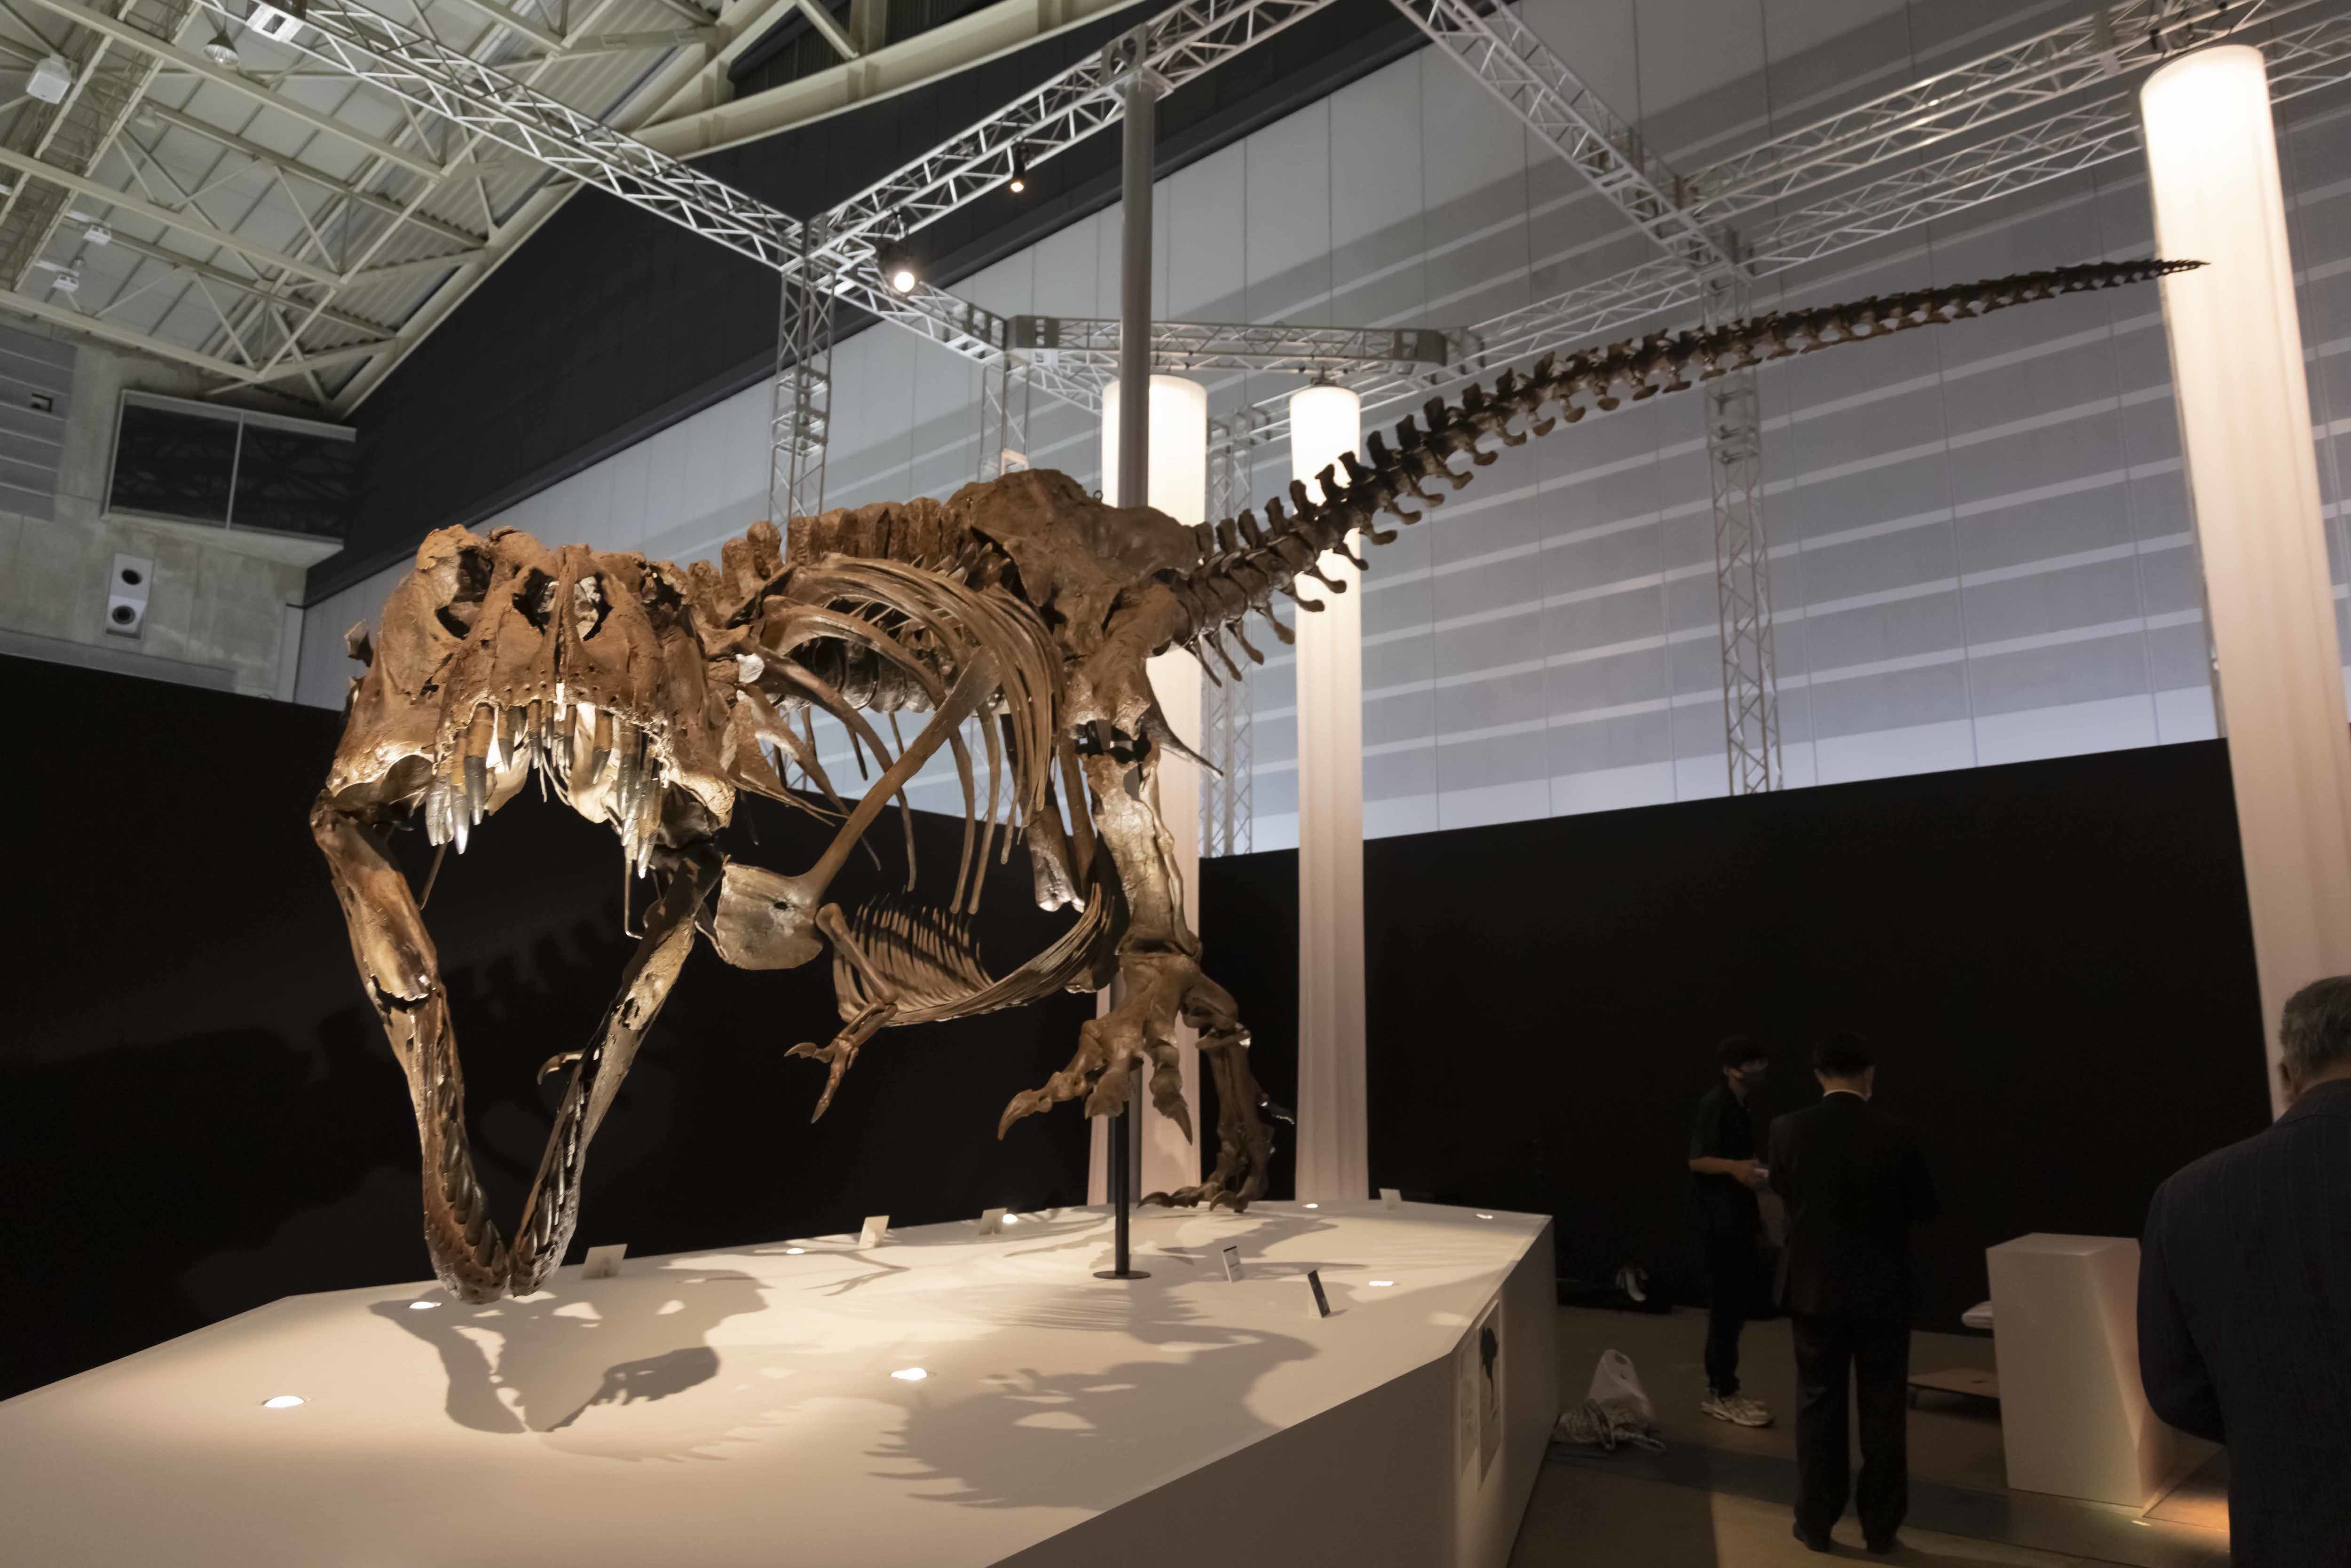 ティラノサウルス「スタン」 ※ヒューストン自然科学博物館所蔵